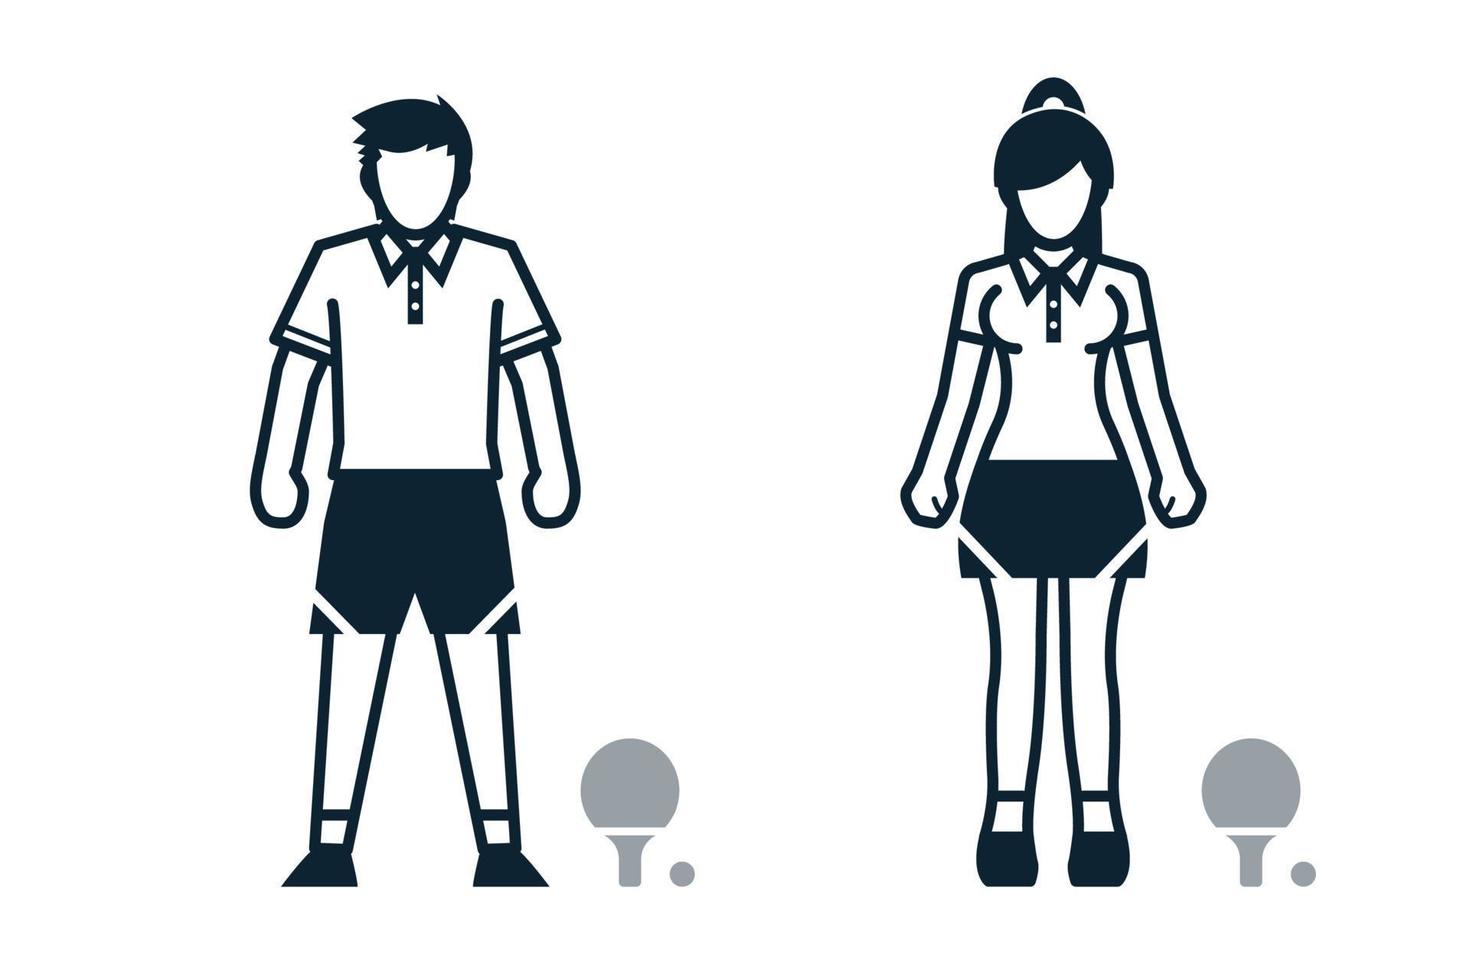 tênis de mesa, jogador de esporte, pessoas e ícones de roupas com fundo branco vetor